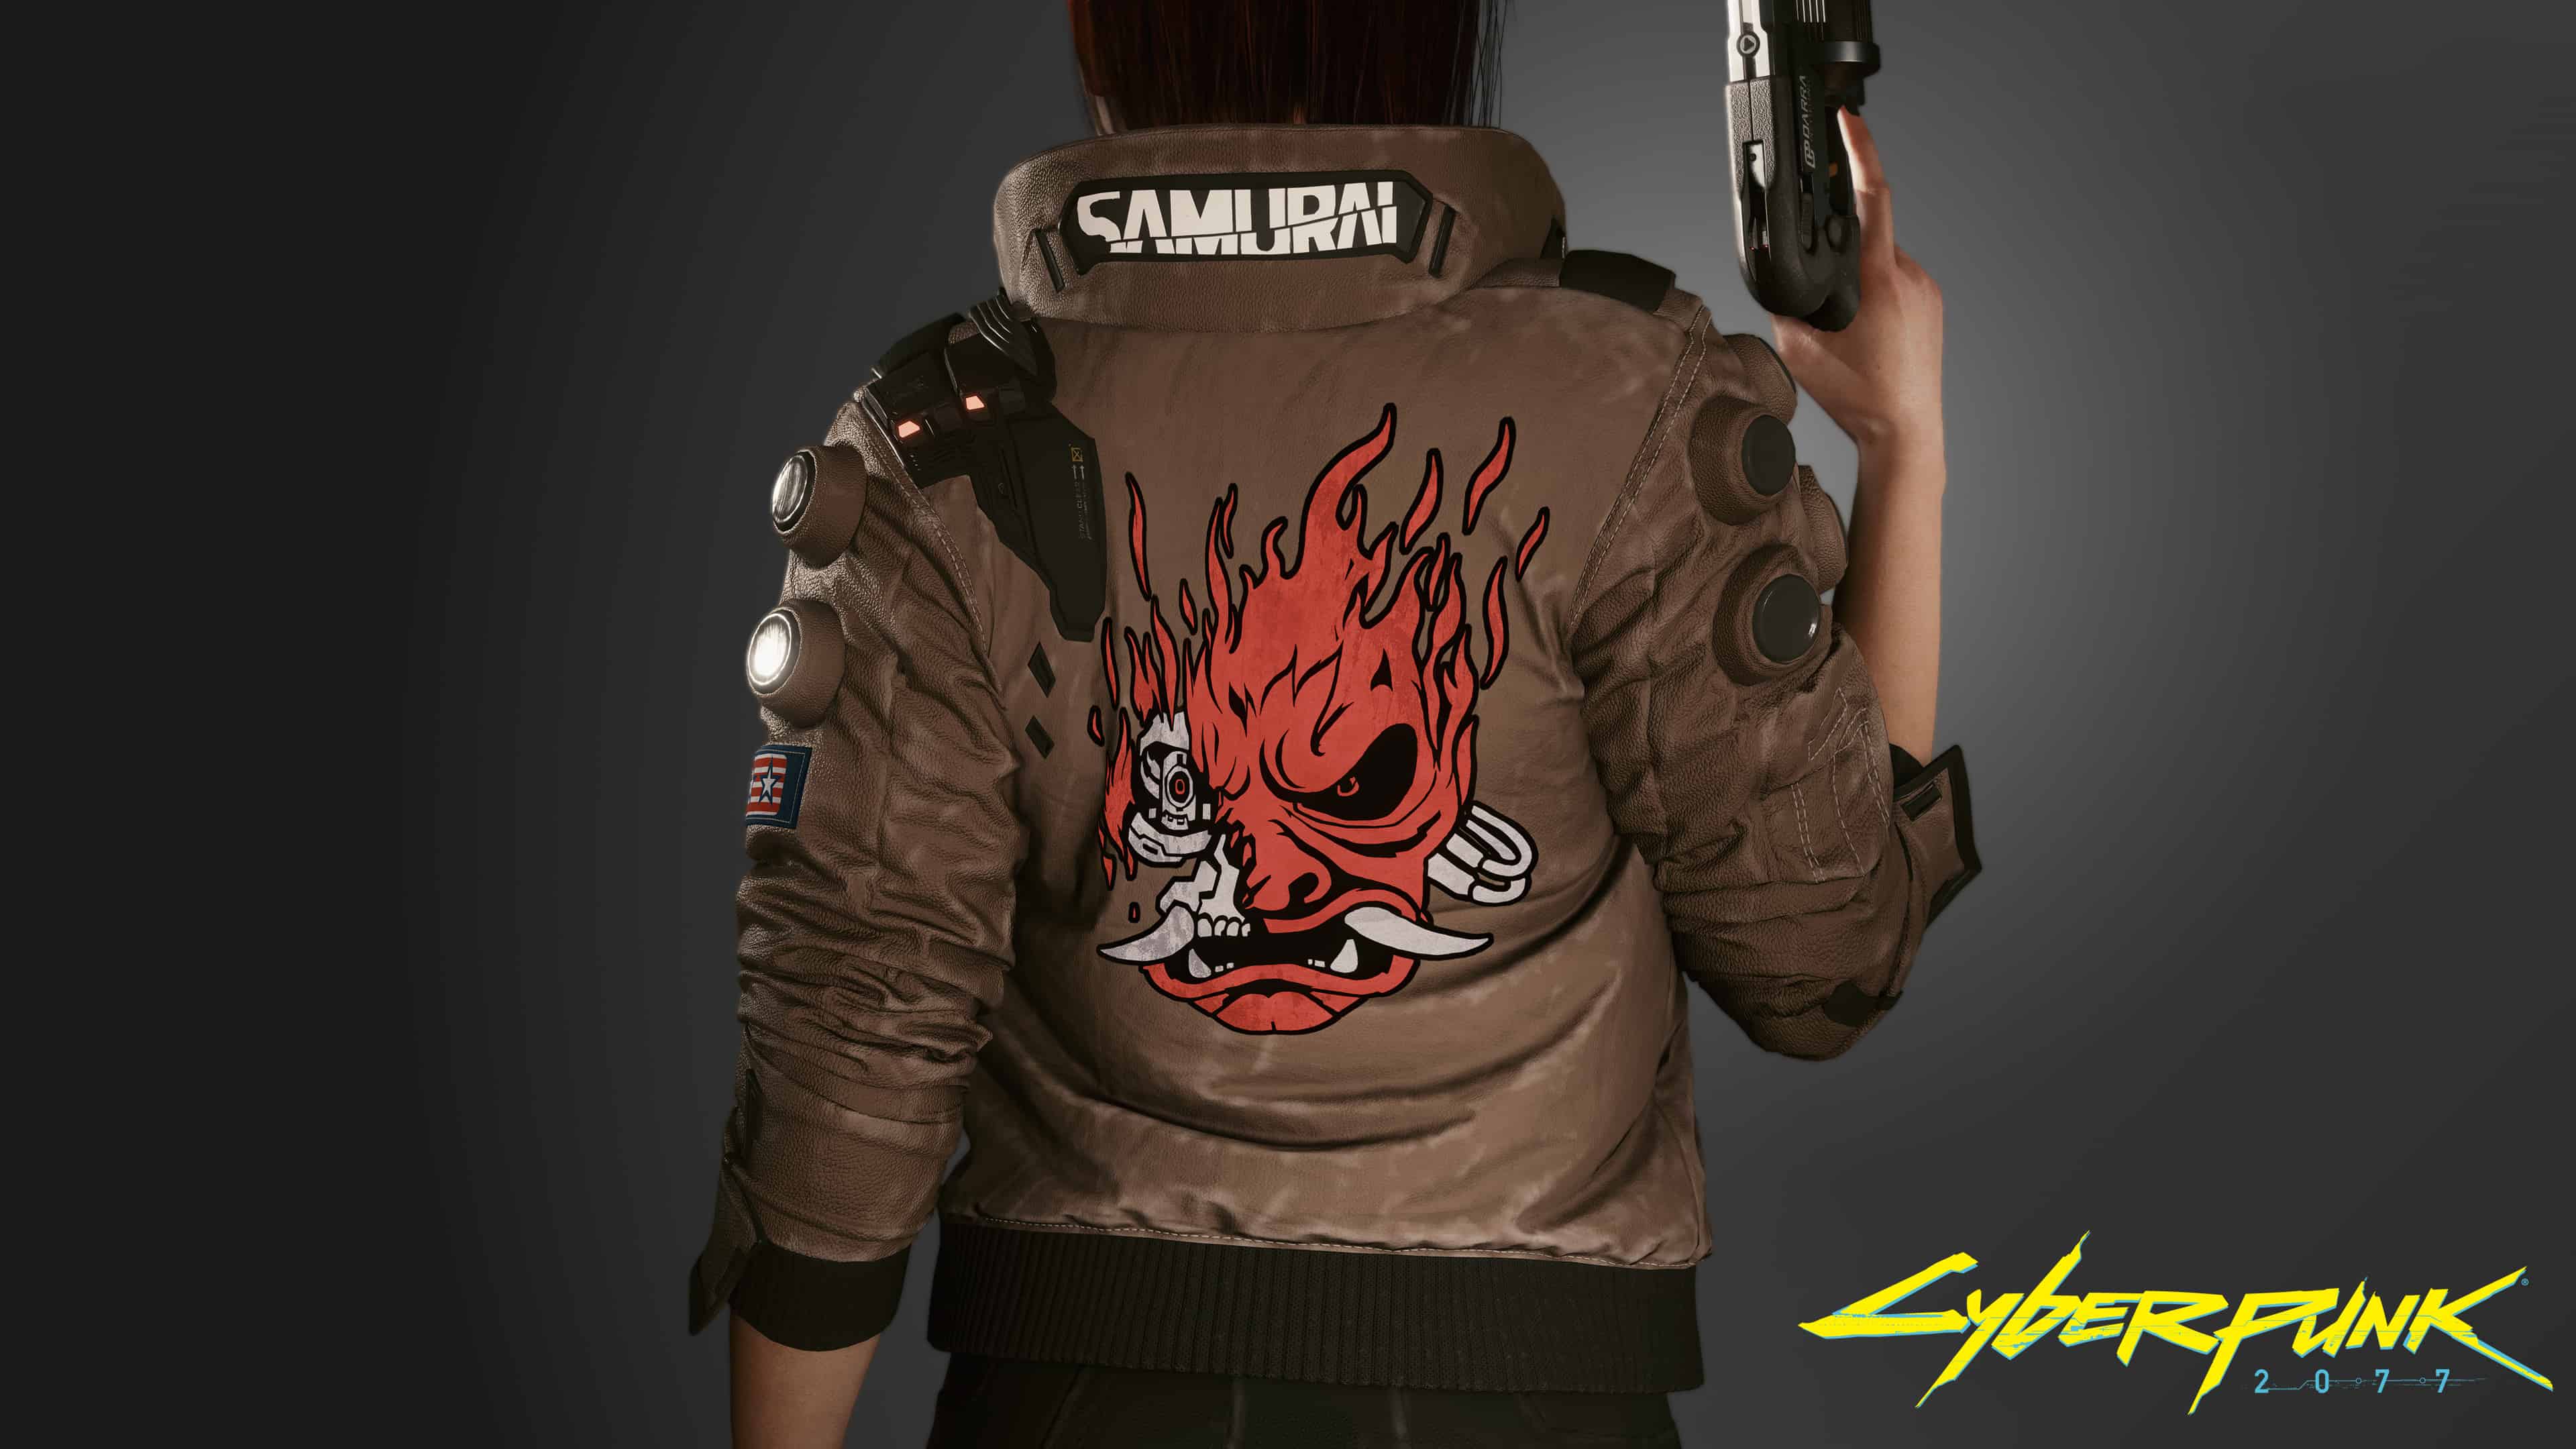 куртка из cyberpunk фото 54